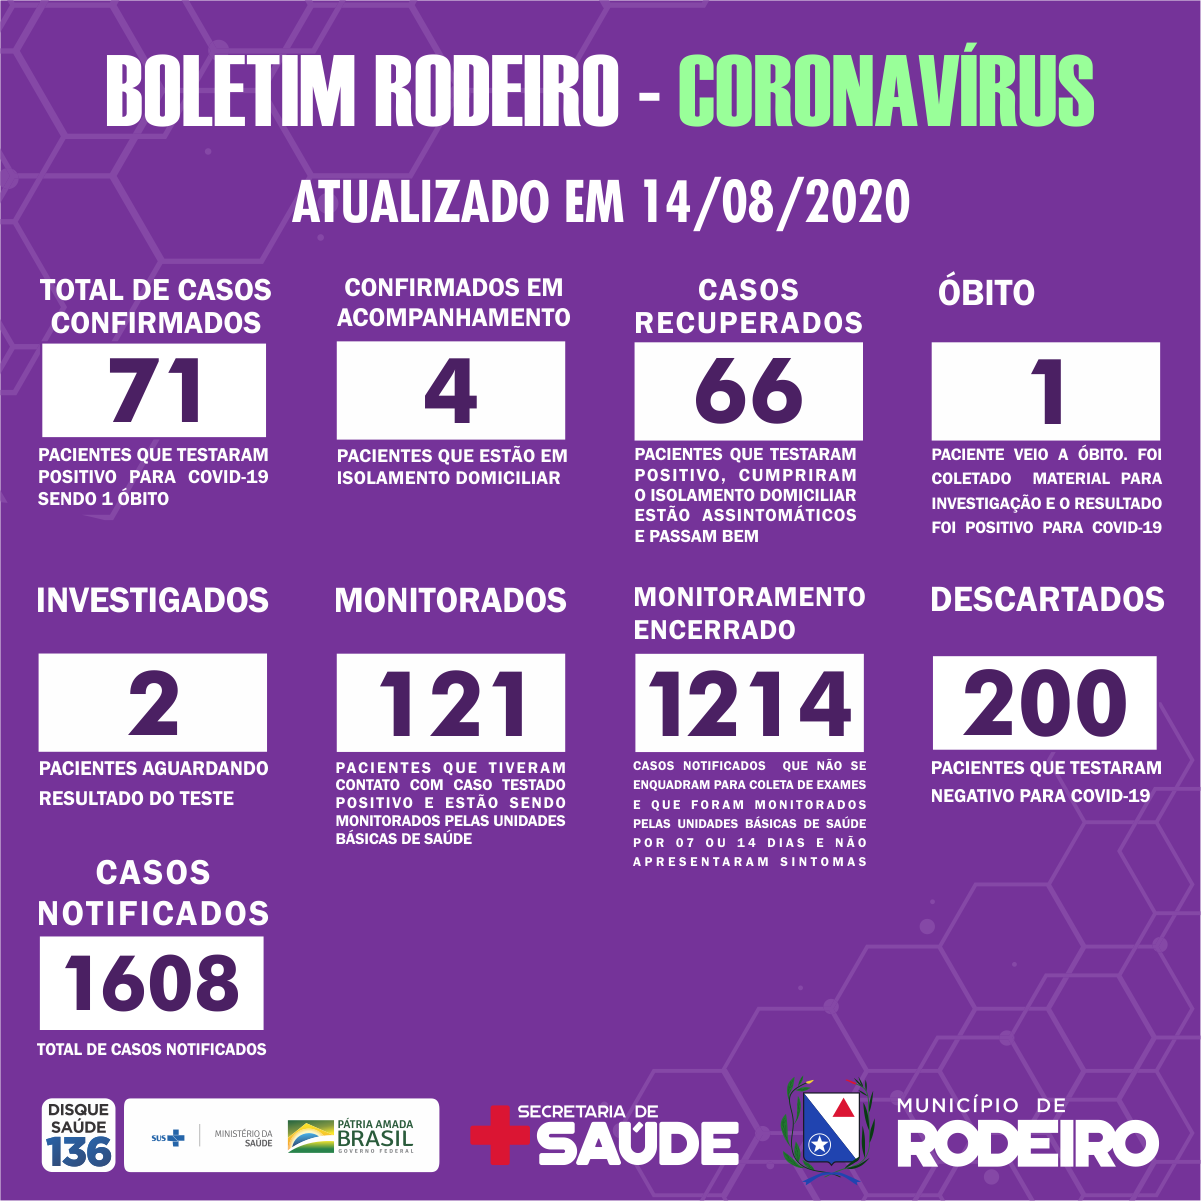 Boletim Epidemiológico do Município de Rodeiro sobre coronavírus, atualizado em 14/08/2020.